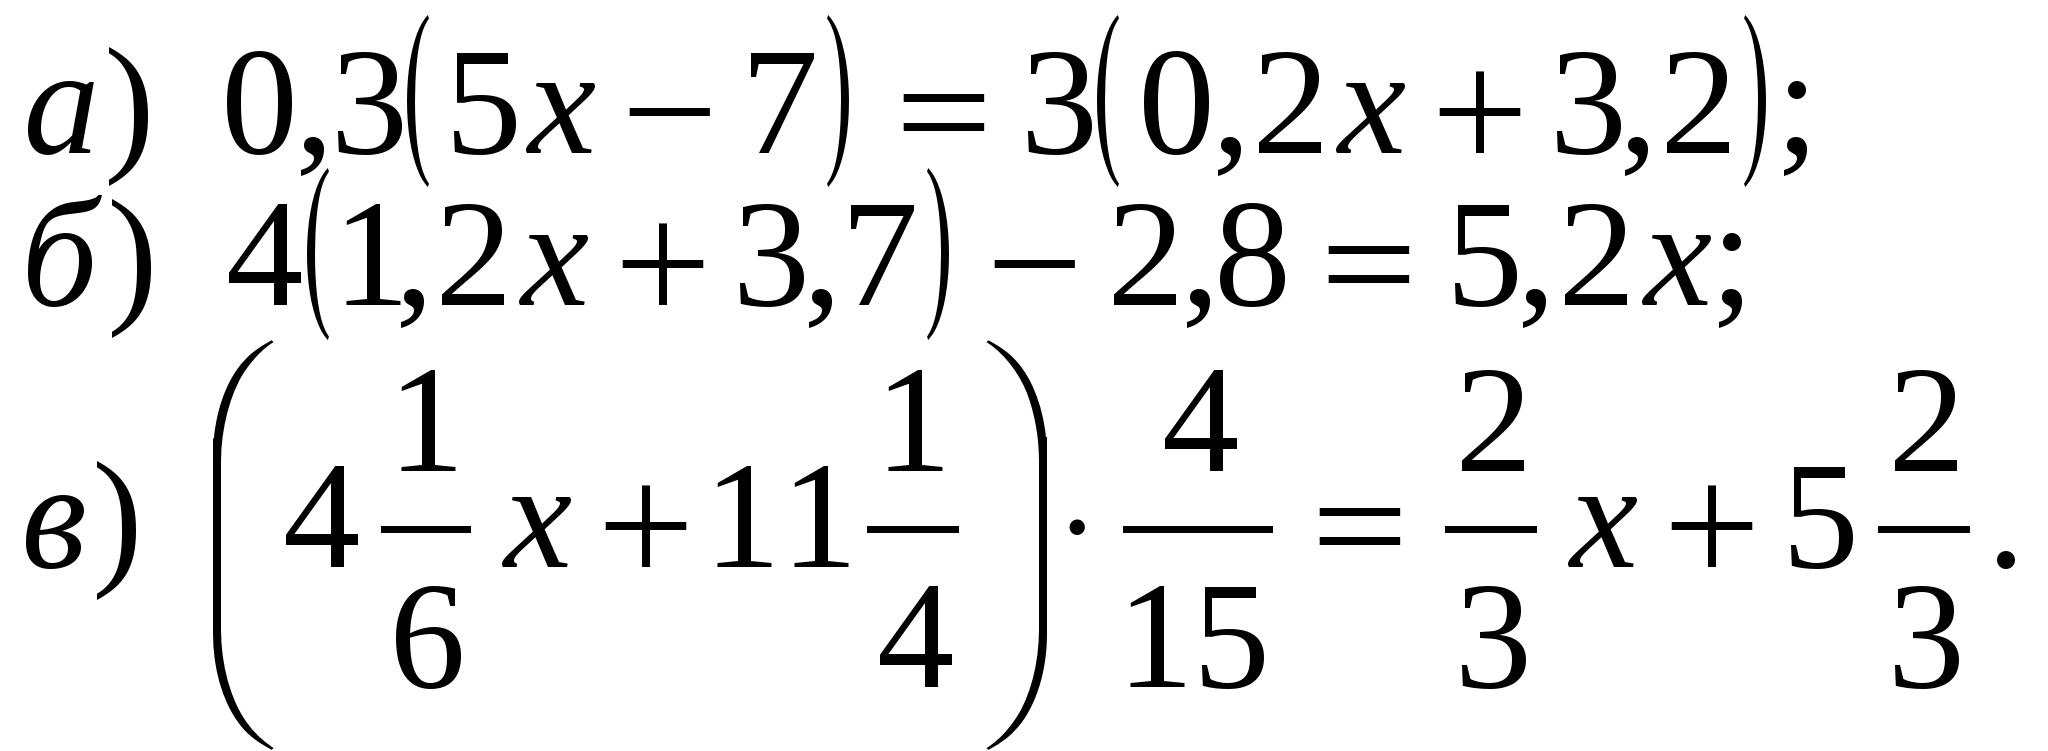 Математика шестой класс решение уравнений. Сложные уравнения 6 класс. 6 Класс математика уравнения сложные. Уравнения 6 класс по математике. Математика 6 класс уравнения.